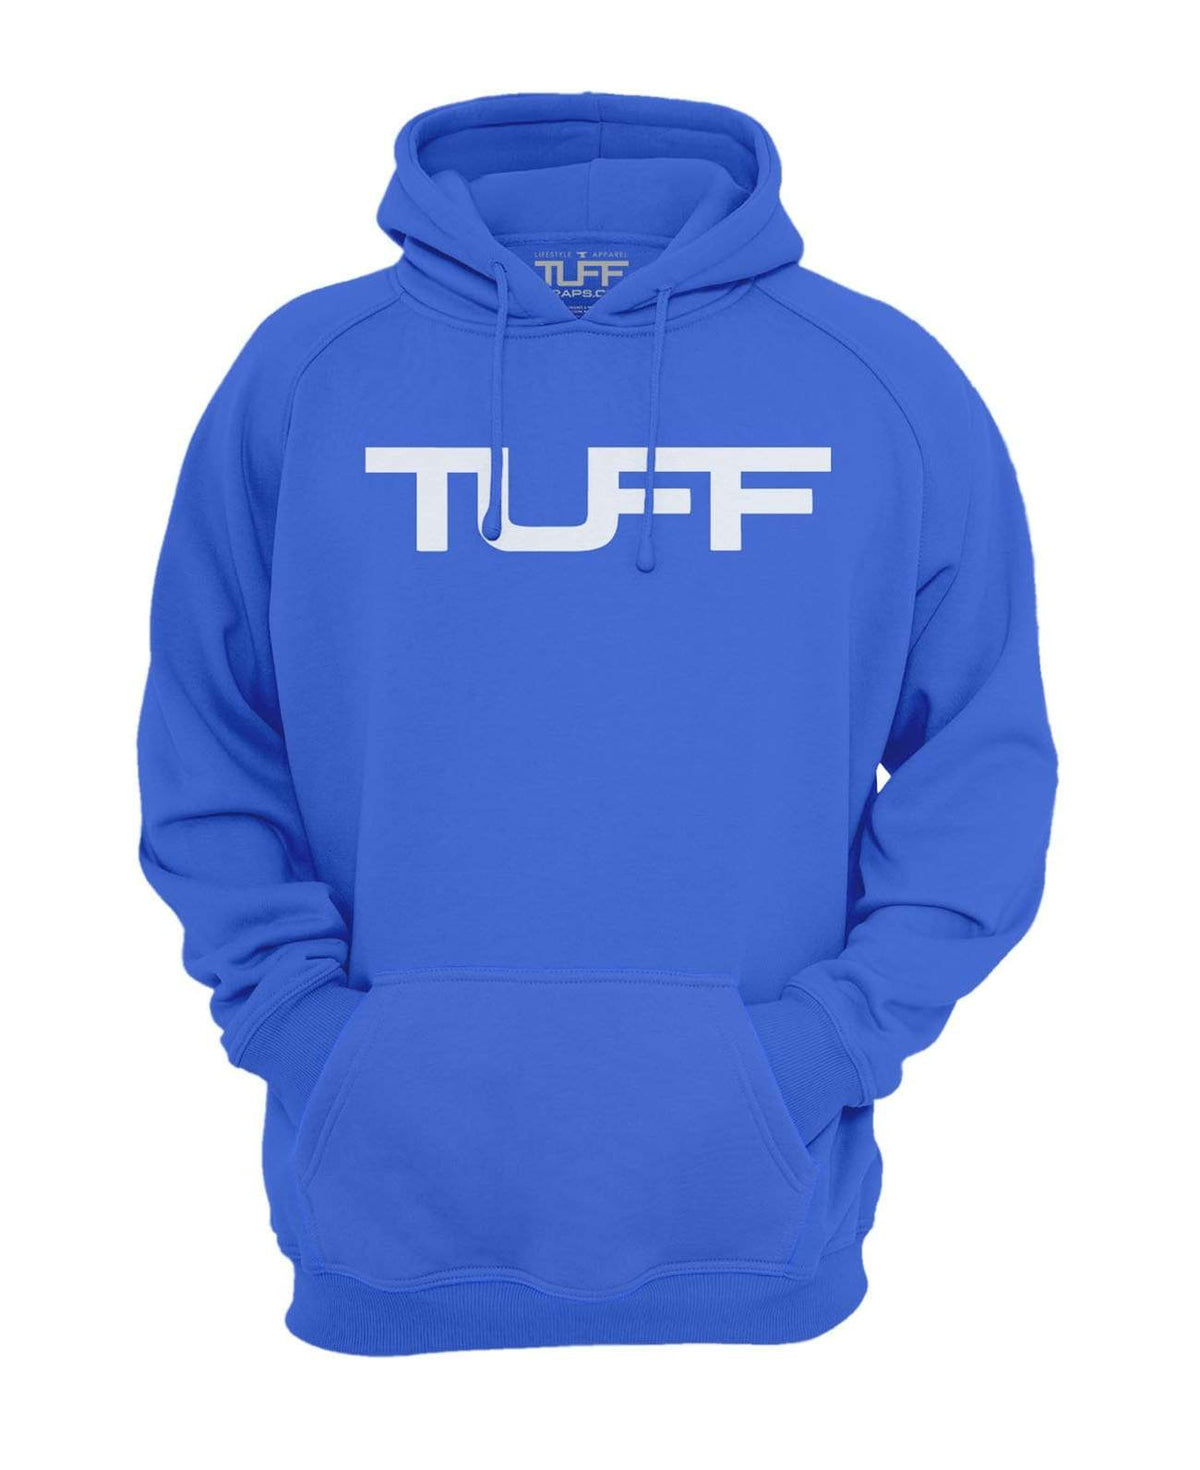 TUFF Apocalyptic Hooded Sweatshirt S / Royal Blue TuffWraps.com